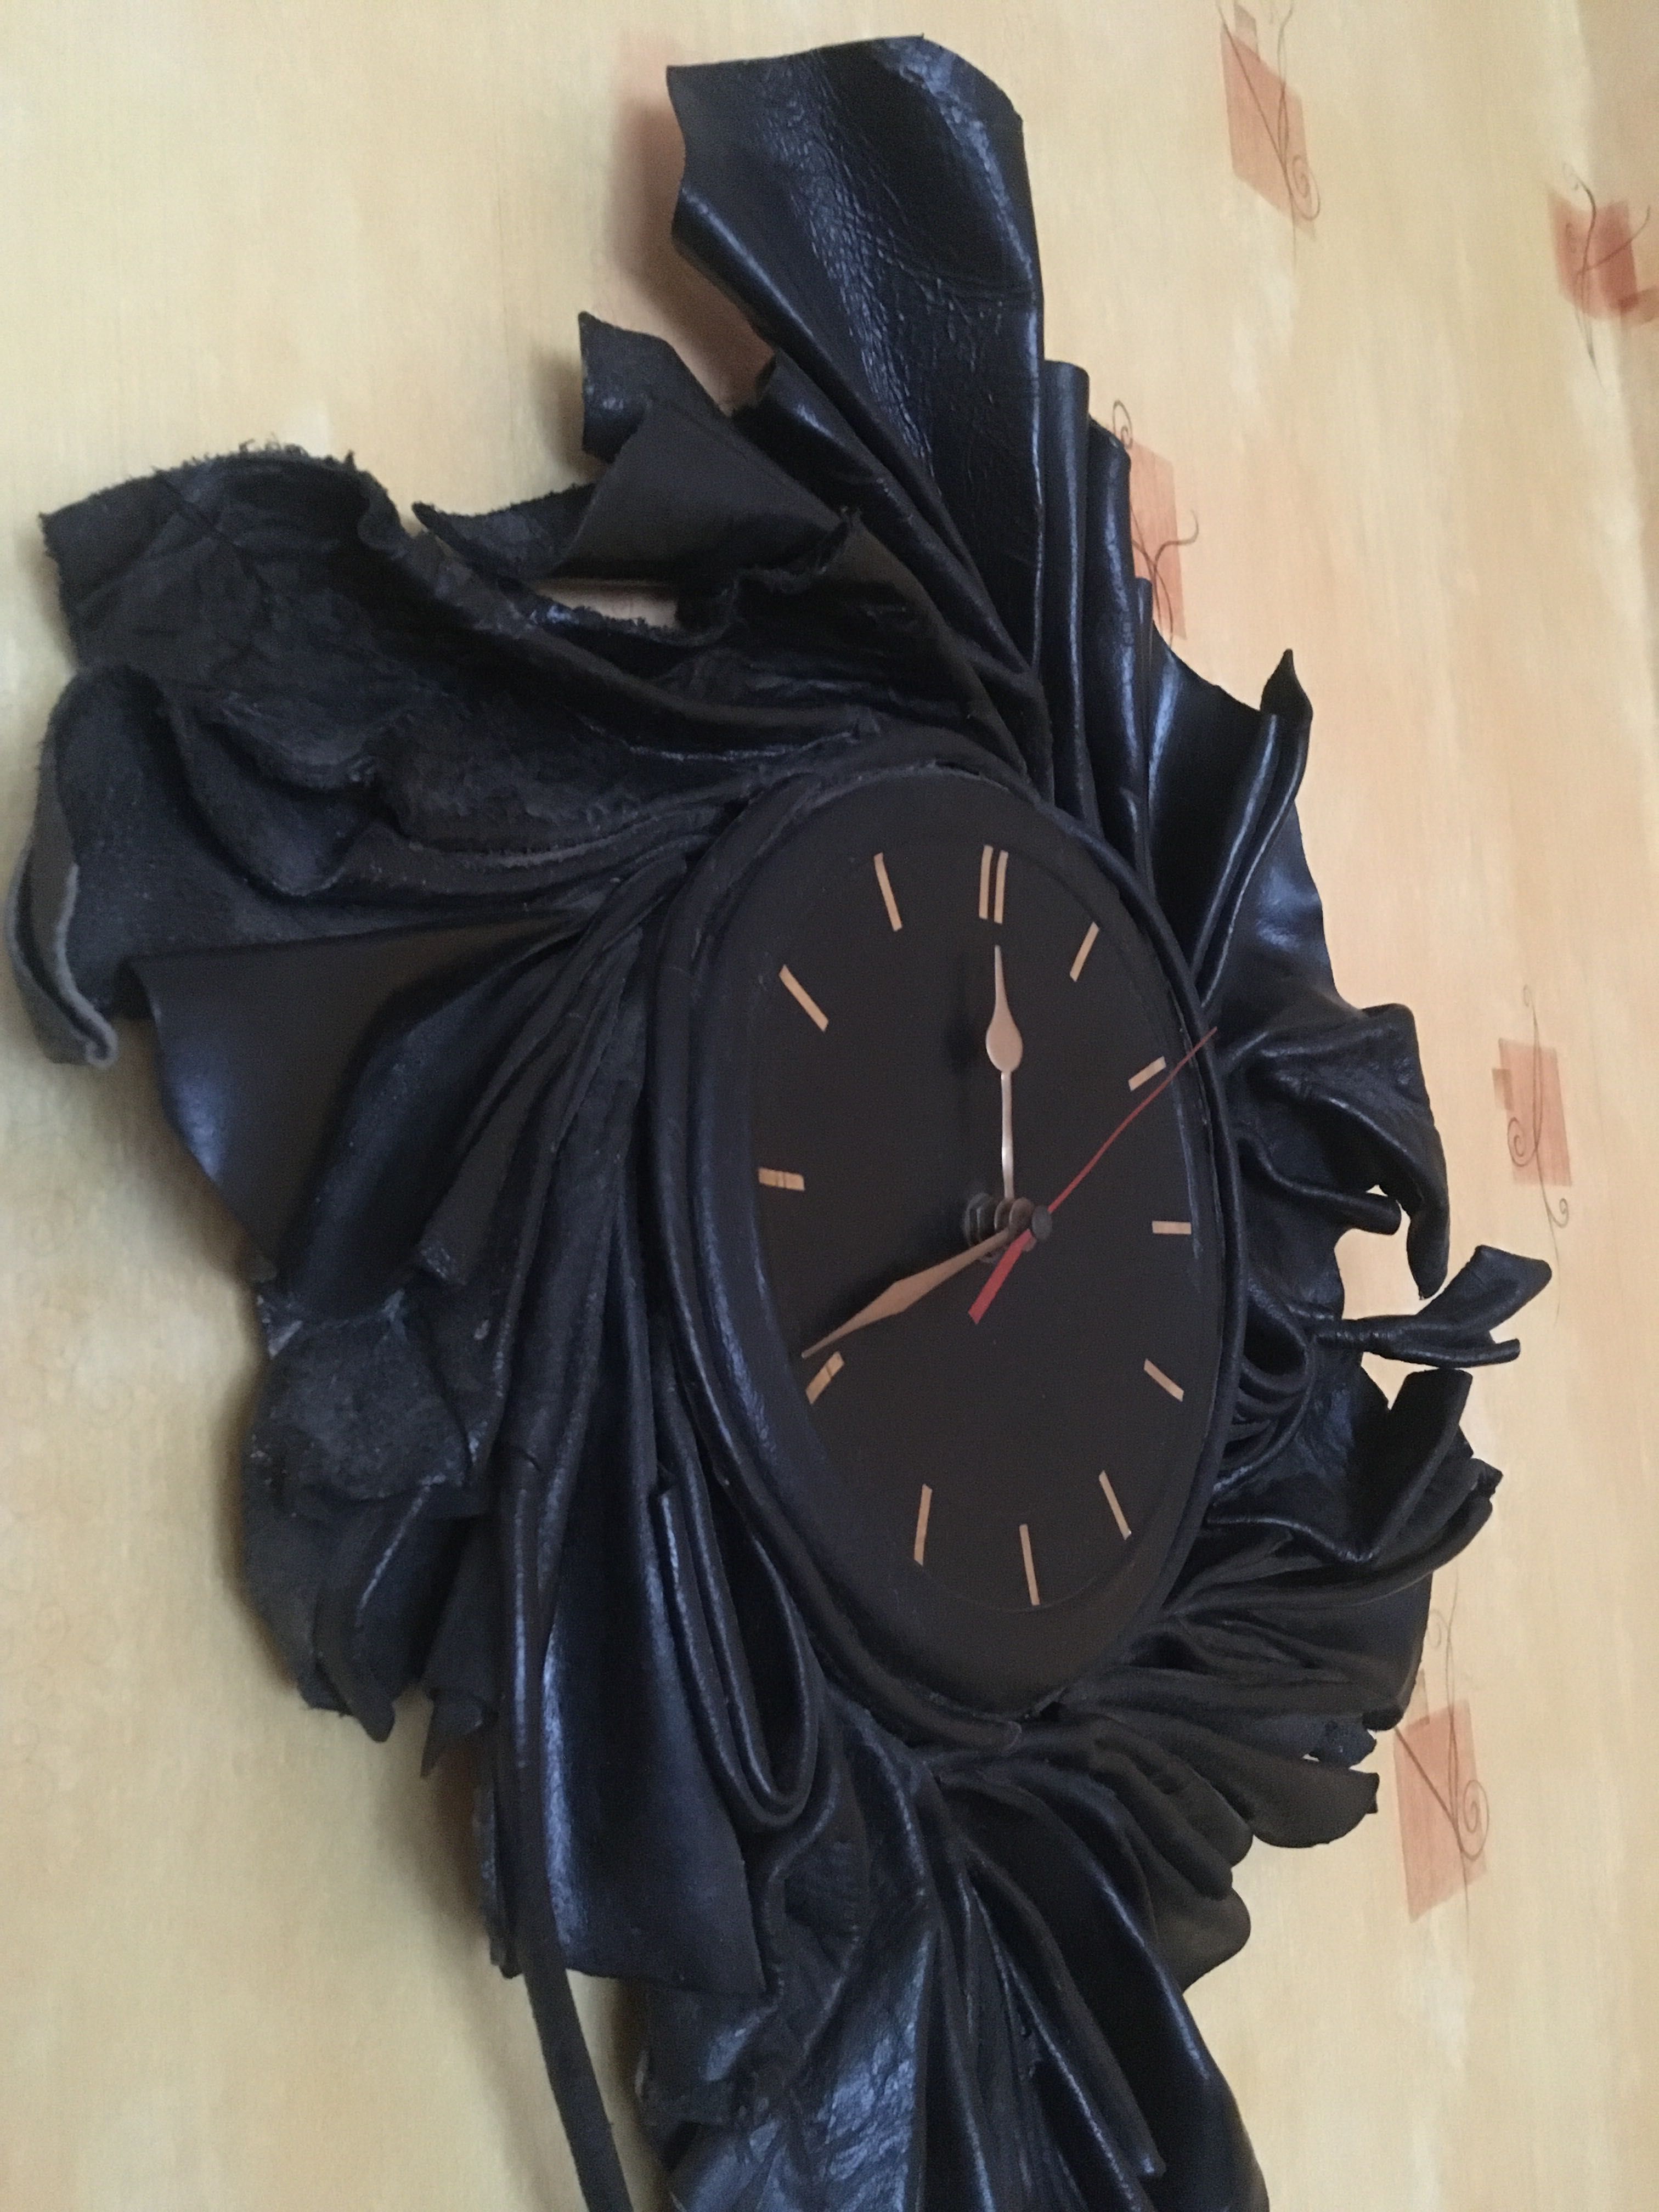 stylowy zegar wykonany w skórze koloru czarnego